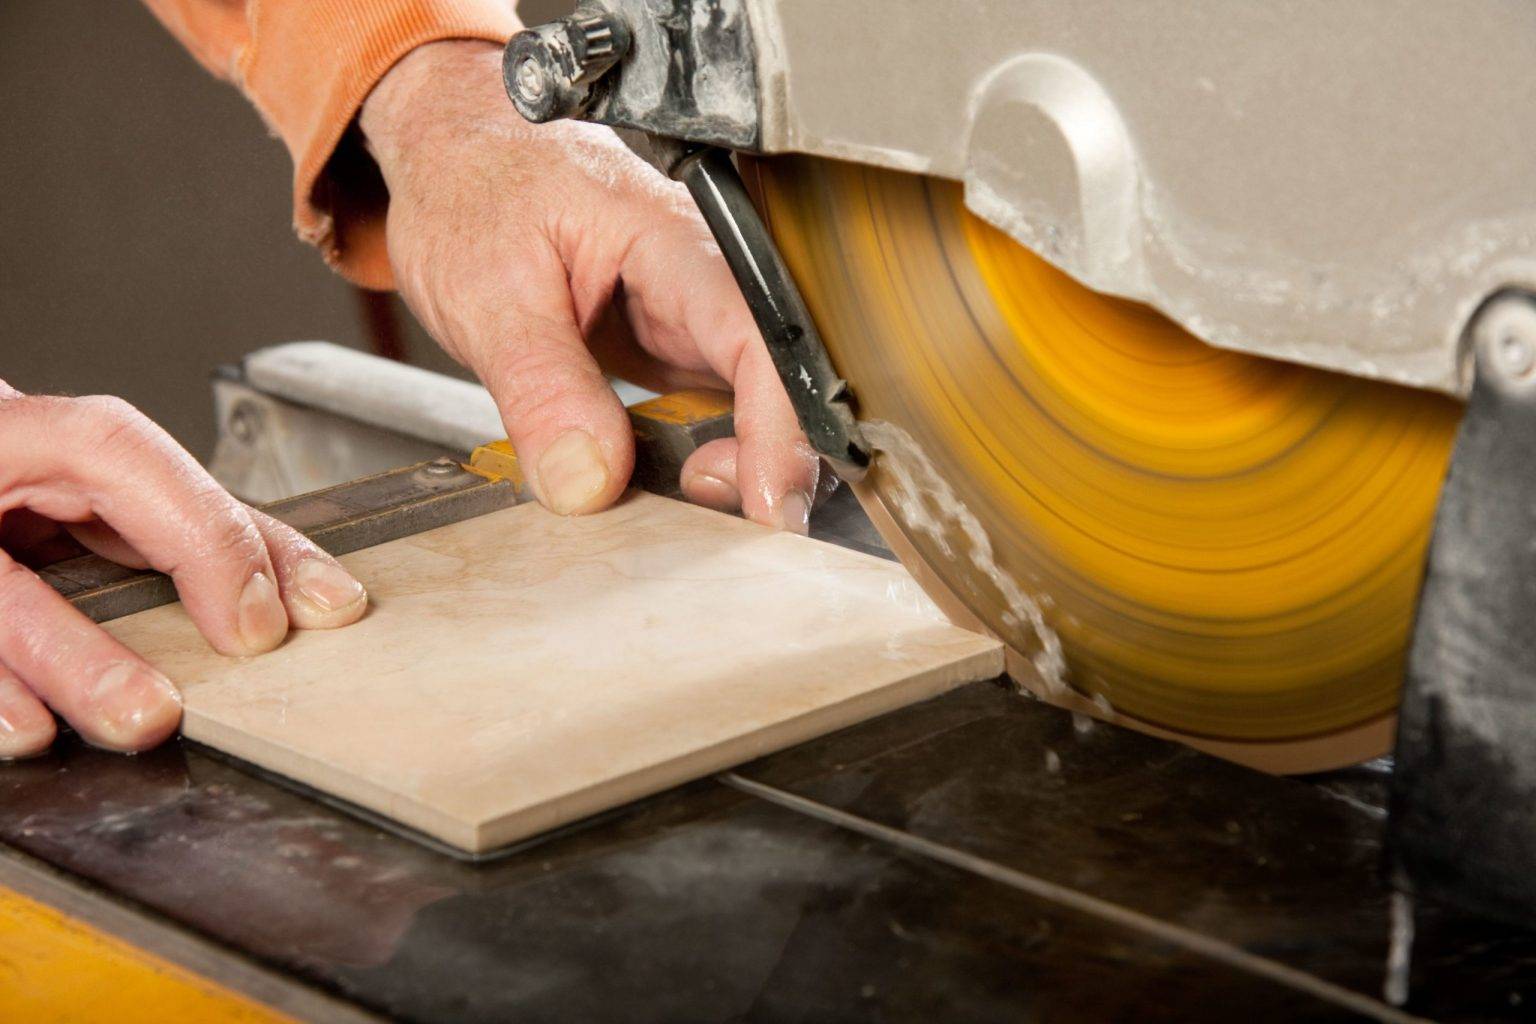 Как резать плитку (керамогранит) ручным плиткорезом или болгаркой: видео